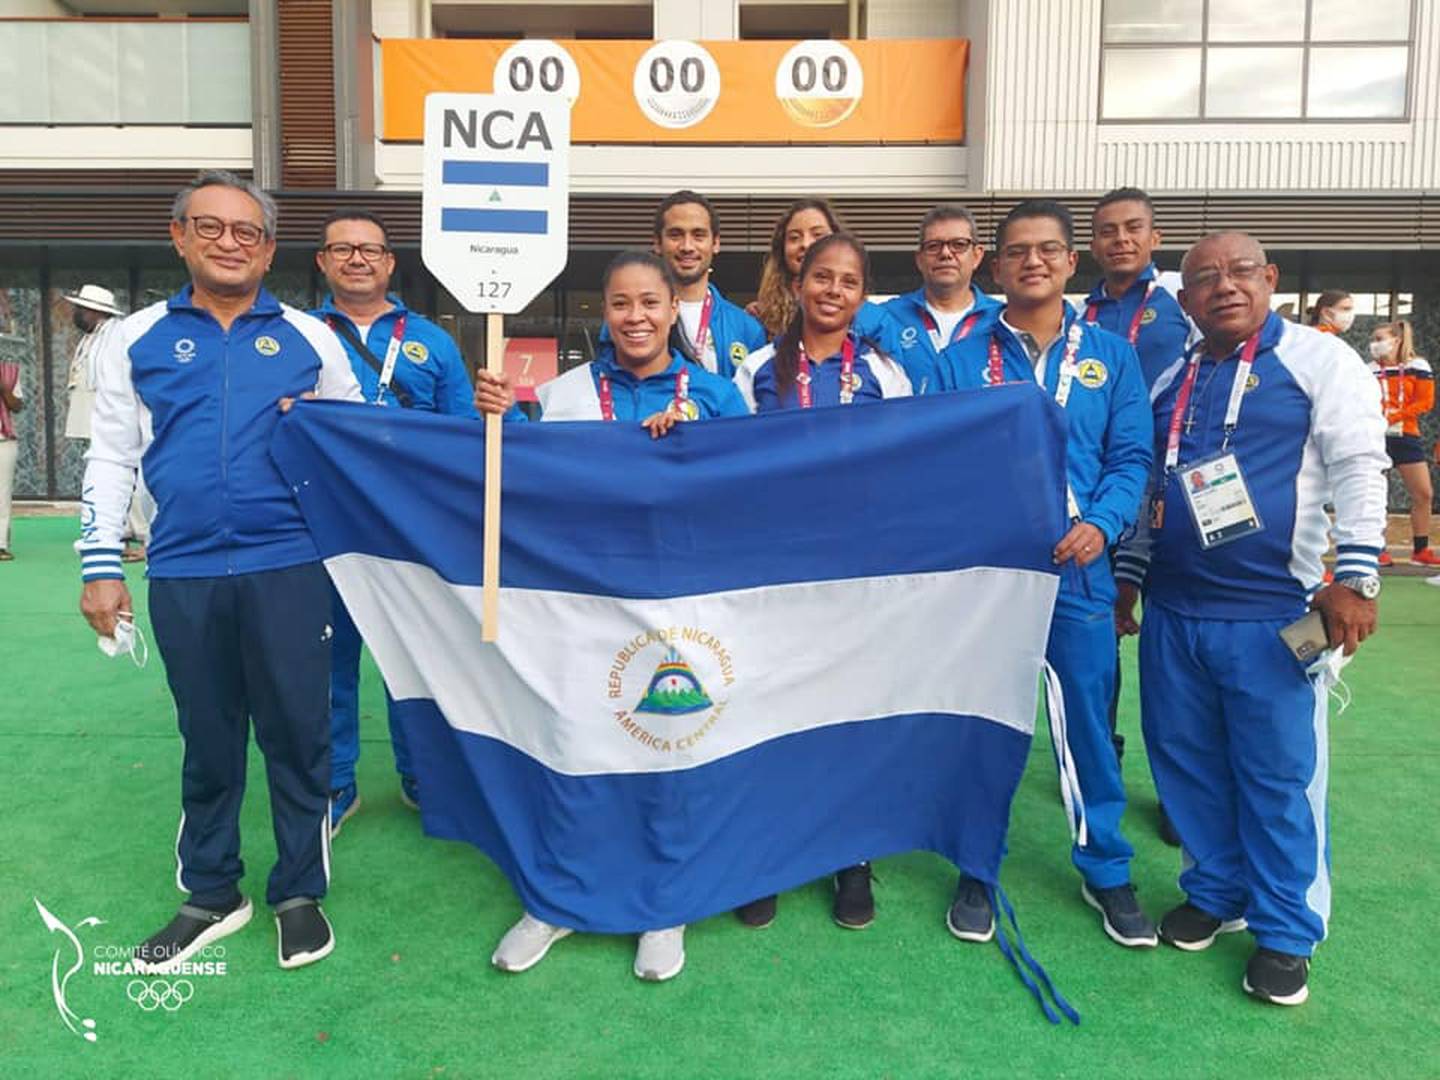 Canal 10 de Nicaragua se puede ver en Canal 544 de Cabletica  Digital y están dando una muy buena y variada programación de los Juegos Olímpicos Tokio 2020